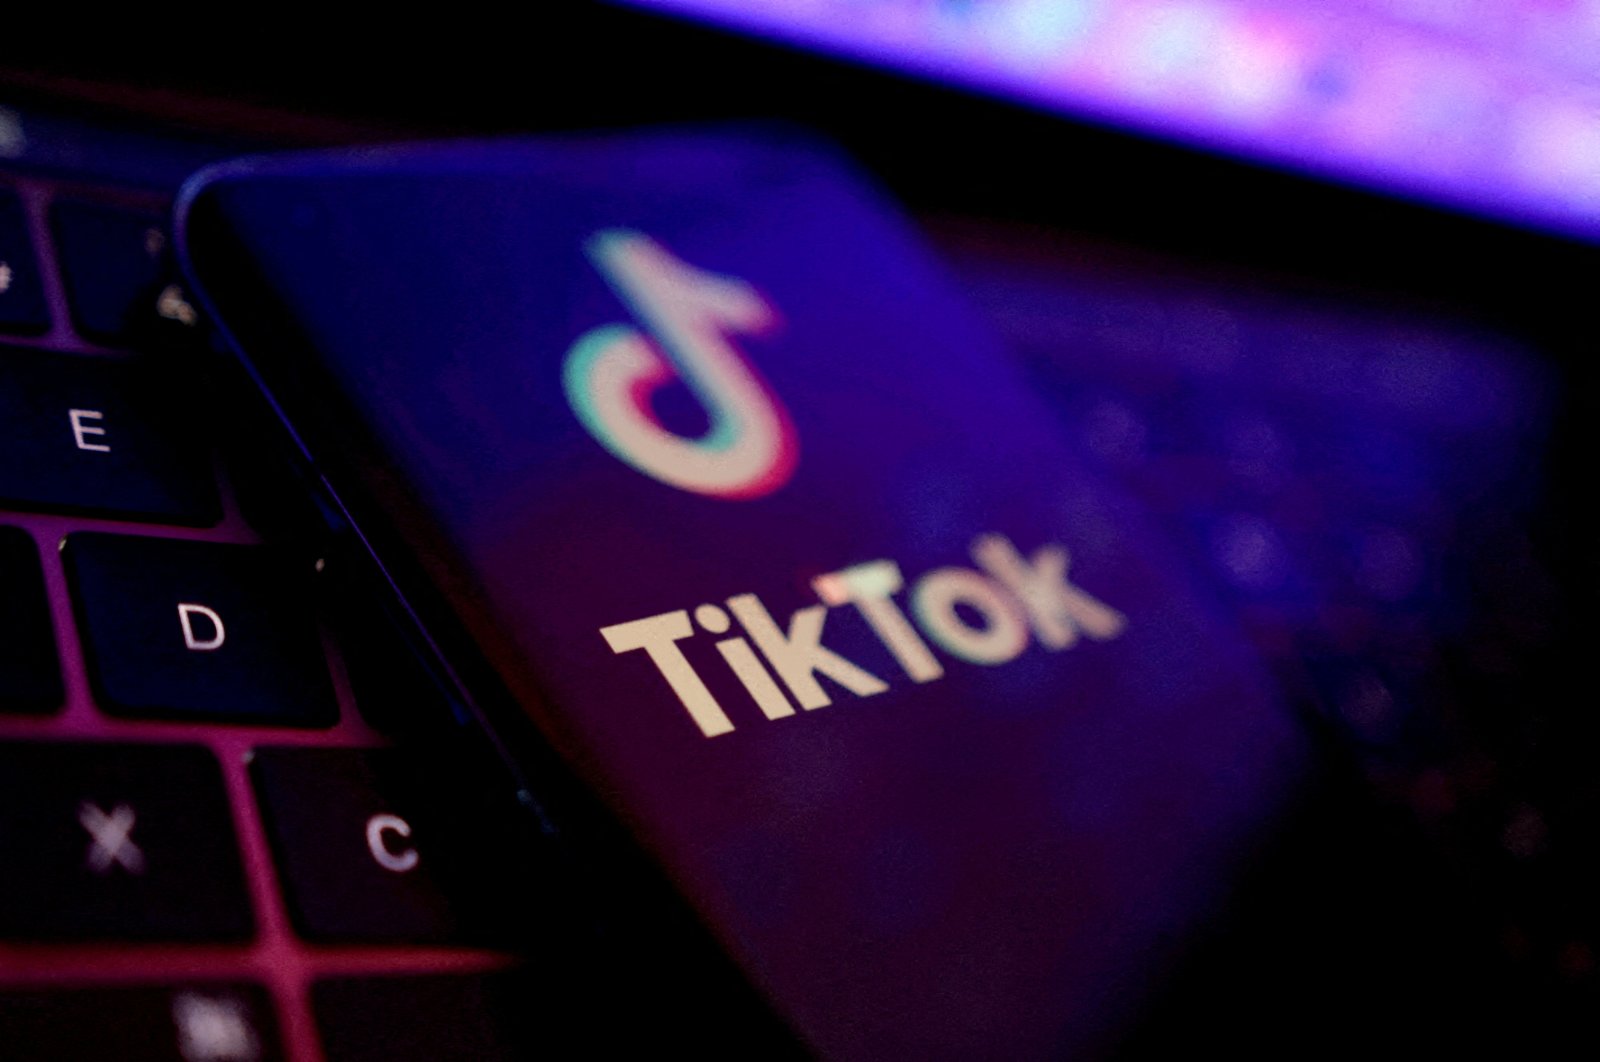 Selandia Baru akan melarang TikTok pada teknologi yang terkait dengan pemerintah karena masalah keamanan